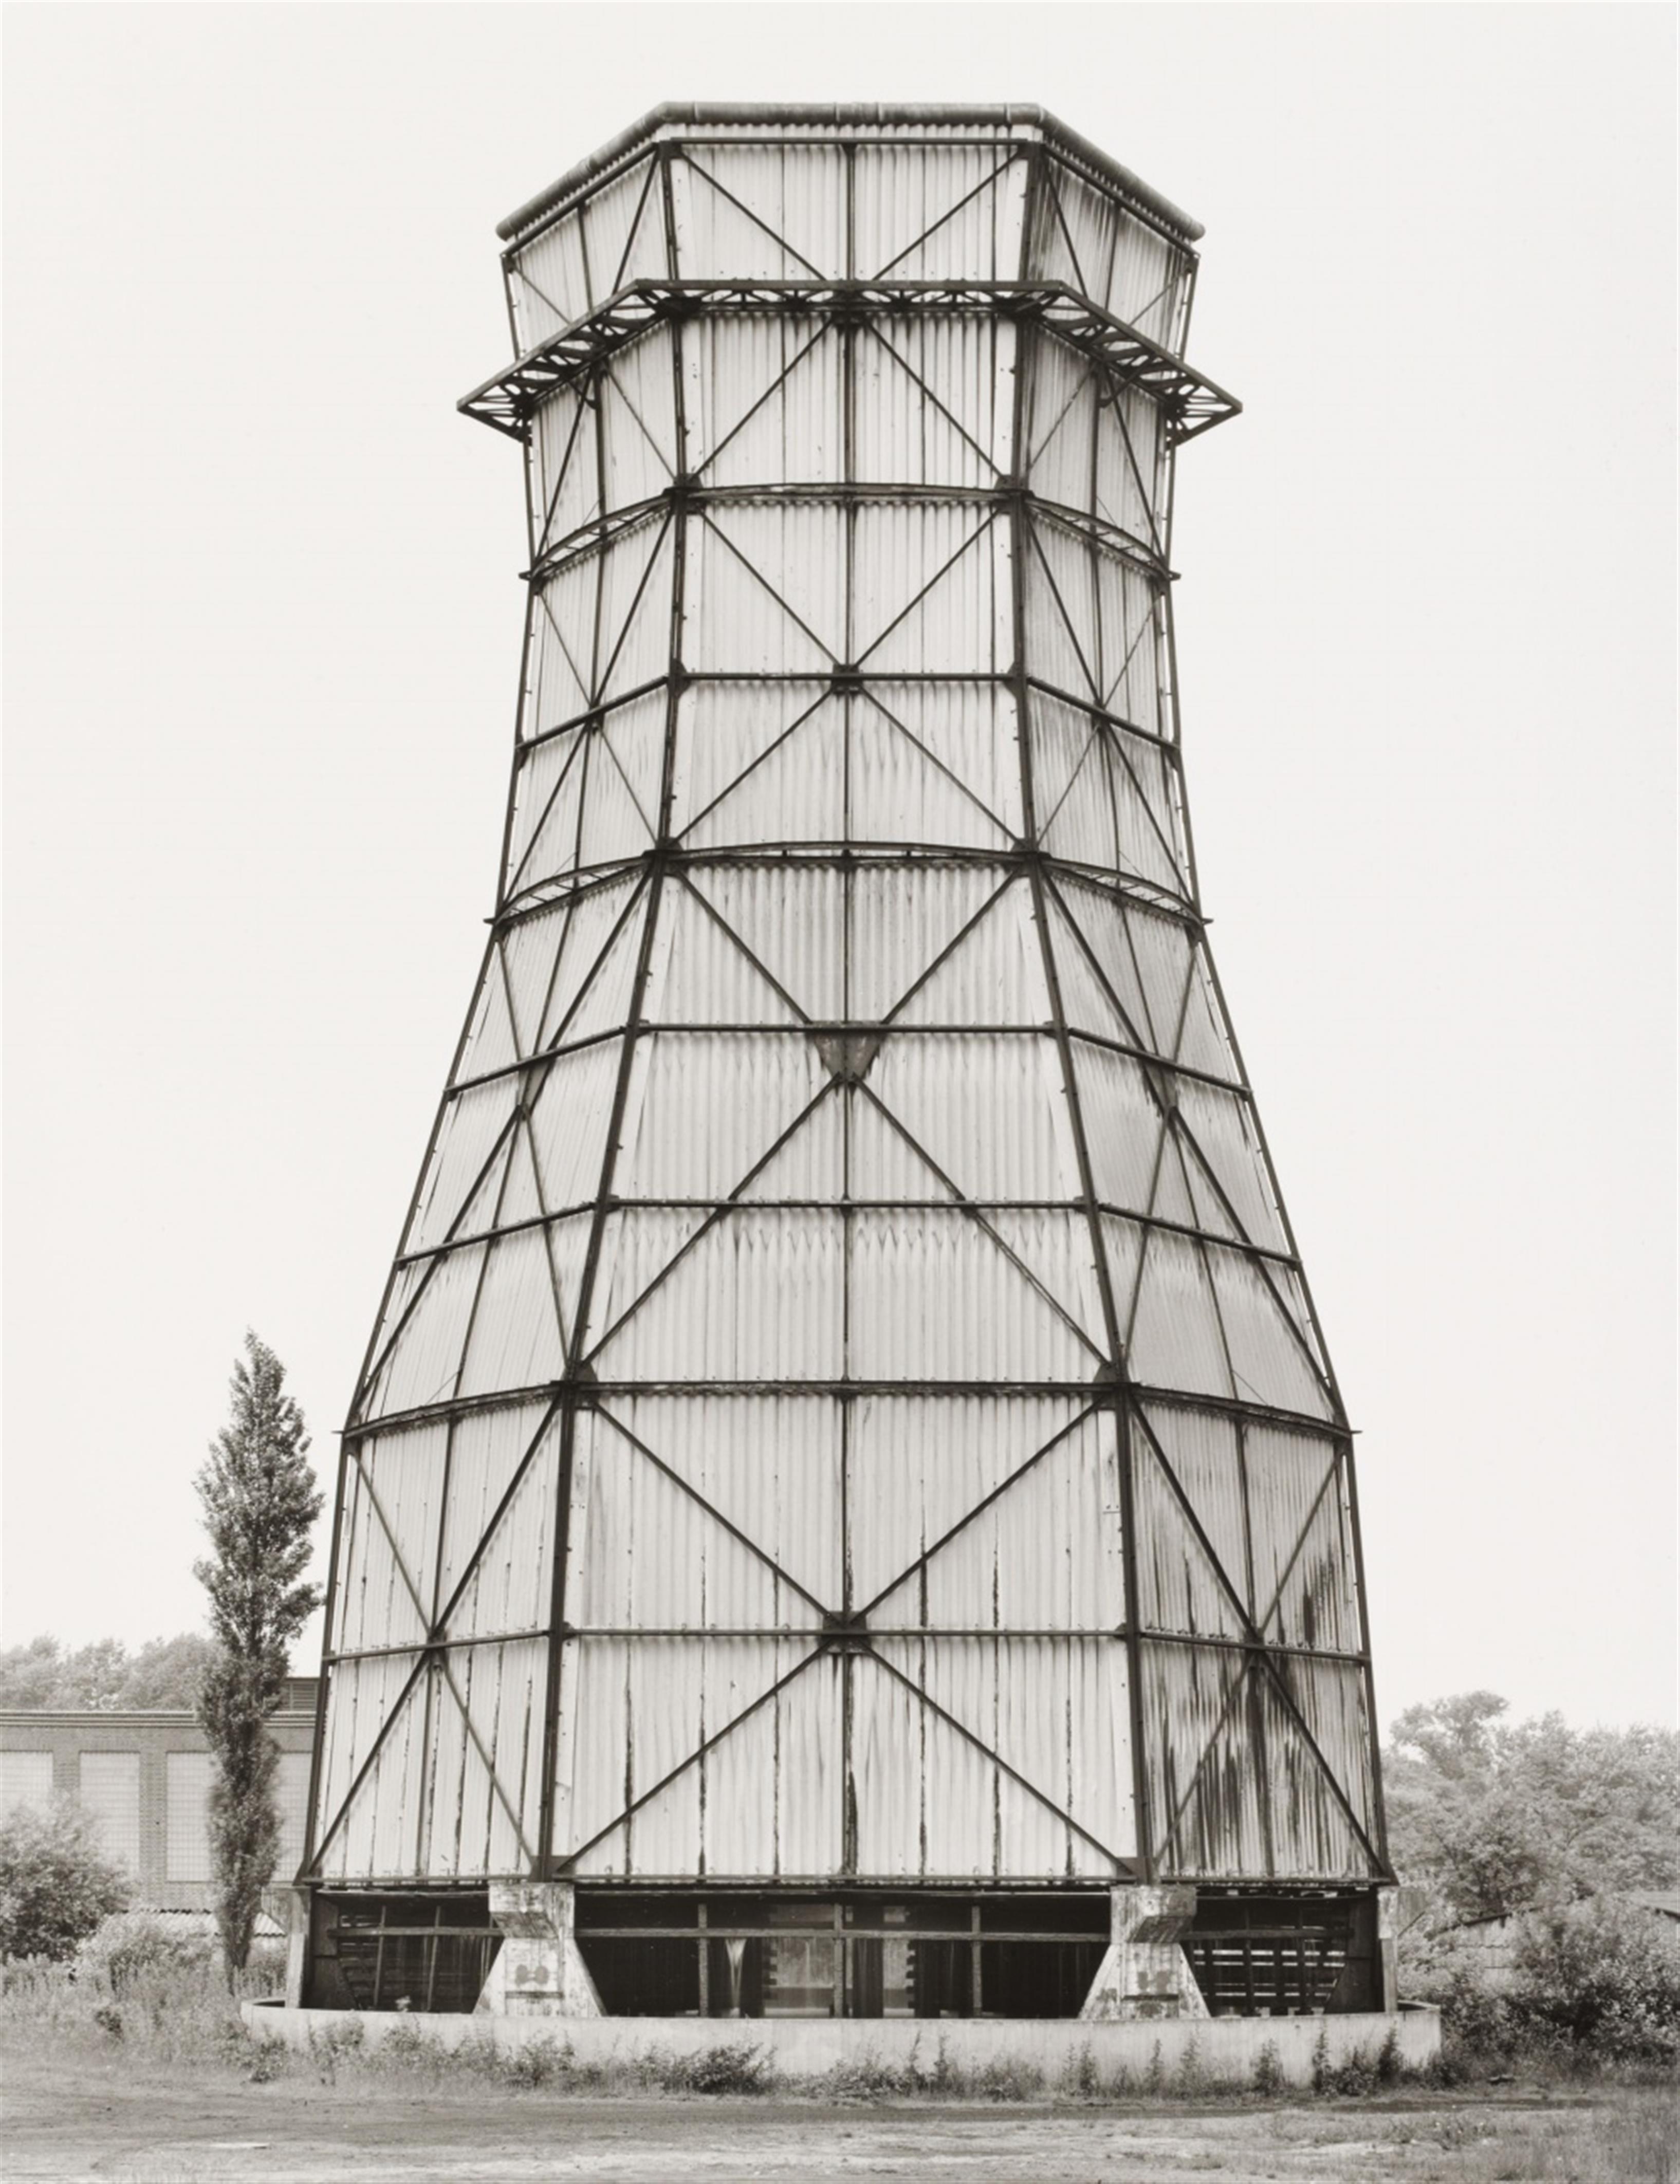 Bernd and Hilla Becher
Hilla Becher
Bernd Becher - Cooling tower, colliery "Waltrop", Waltrop, Ruhr District - image-1